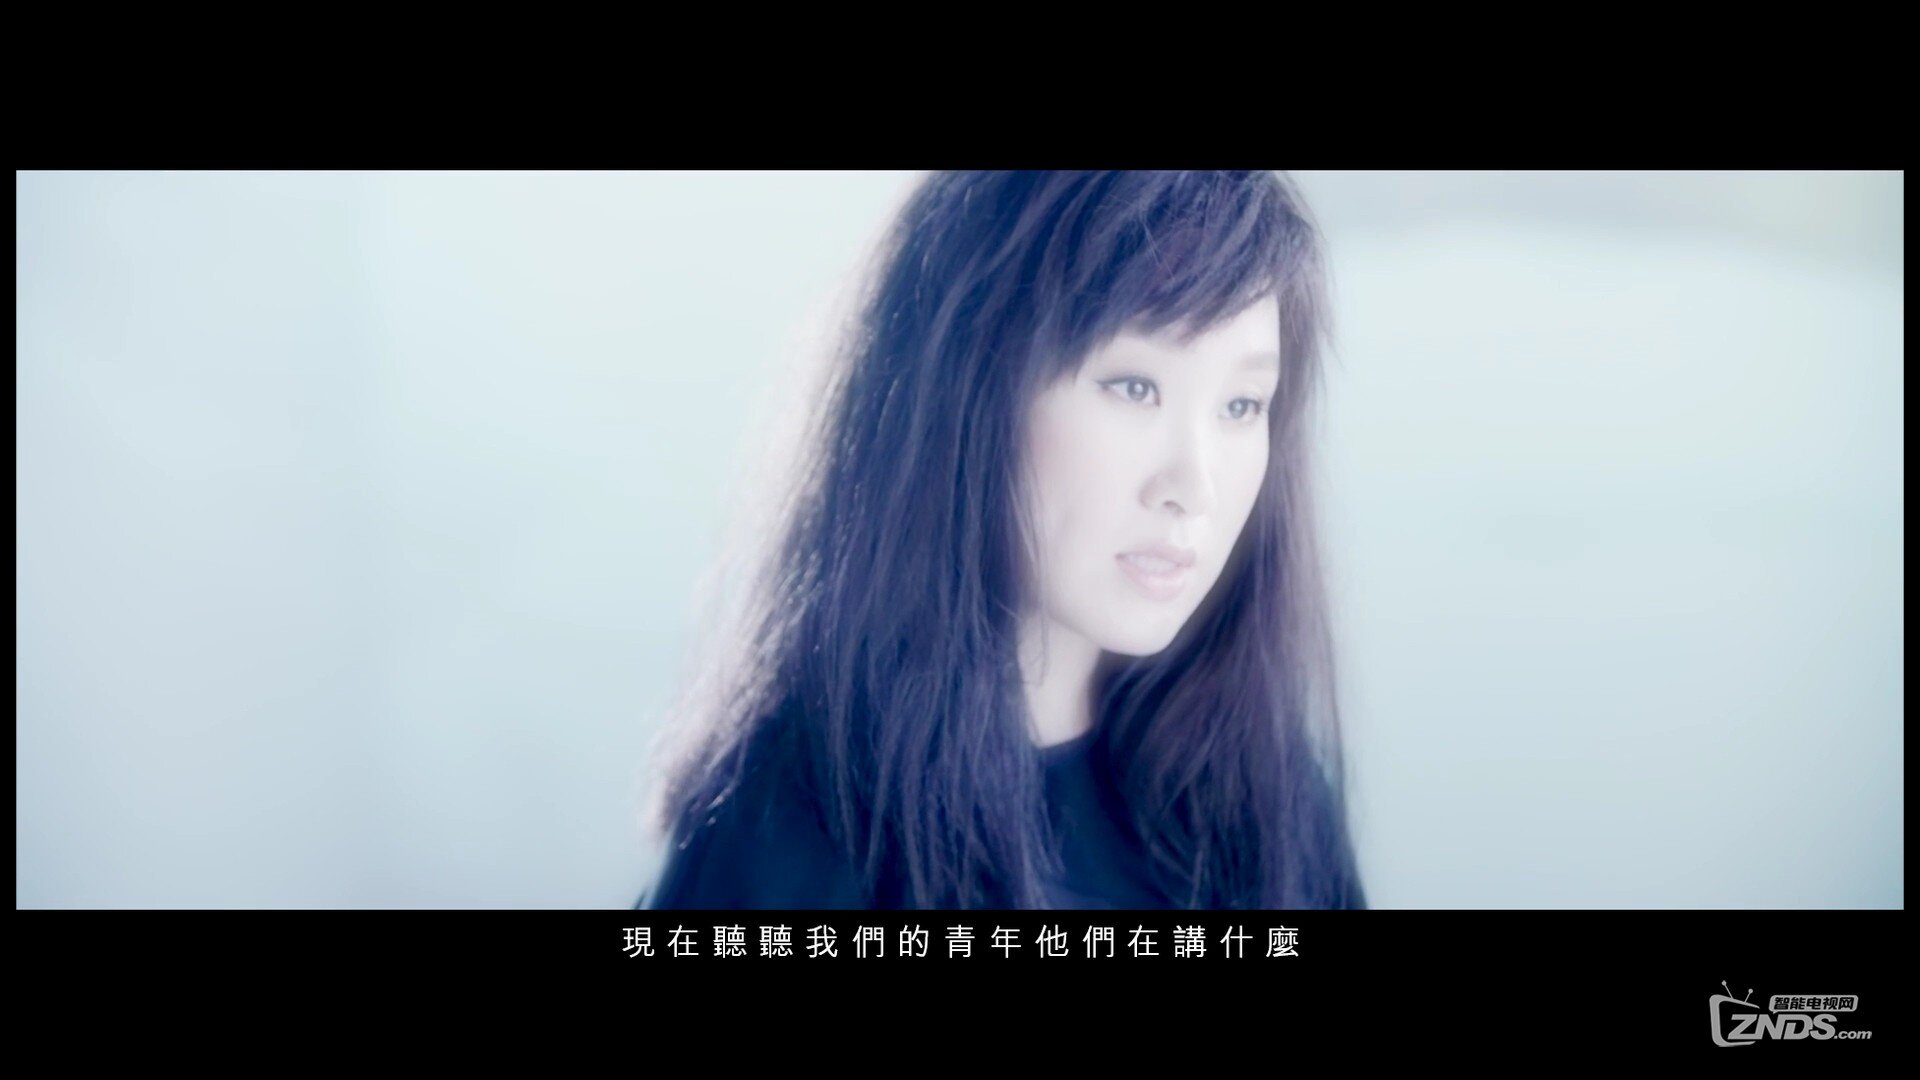 王菀之 Ivana Wong - 之乎者也 (电影《三人行》